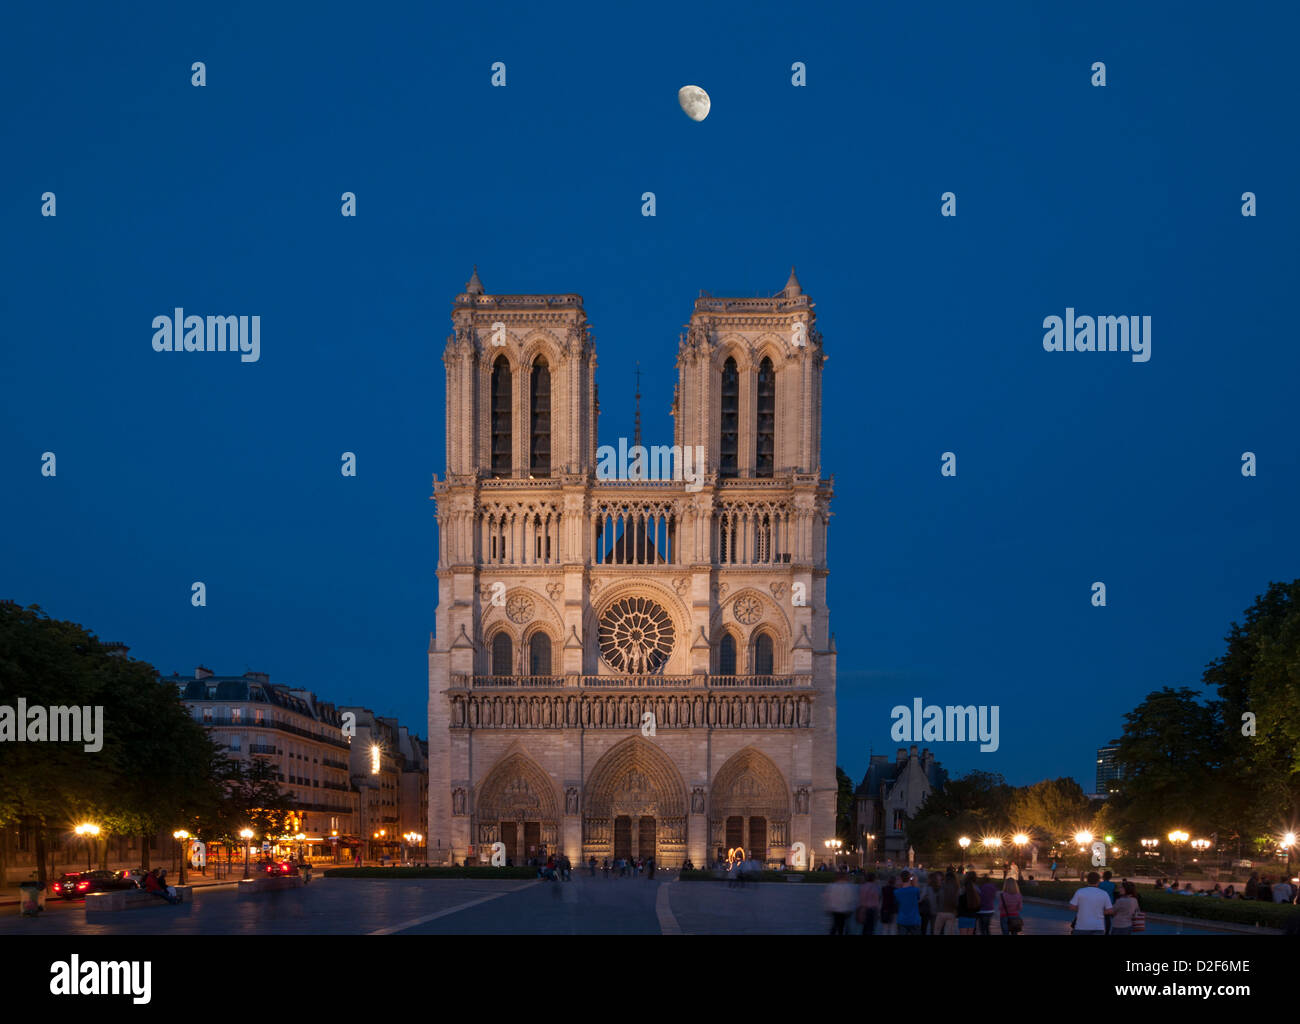 Cathedral of Notre Dame de Paris,France Stock Photo